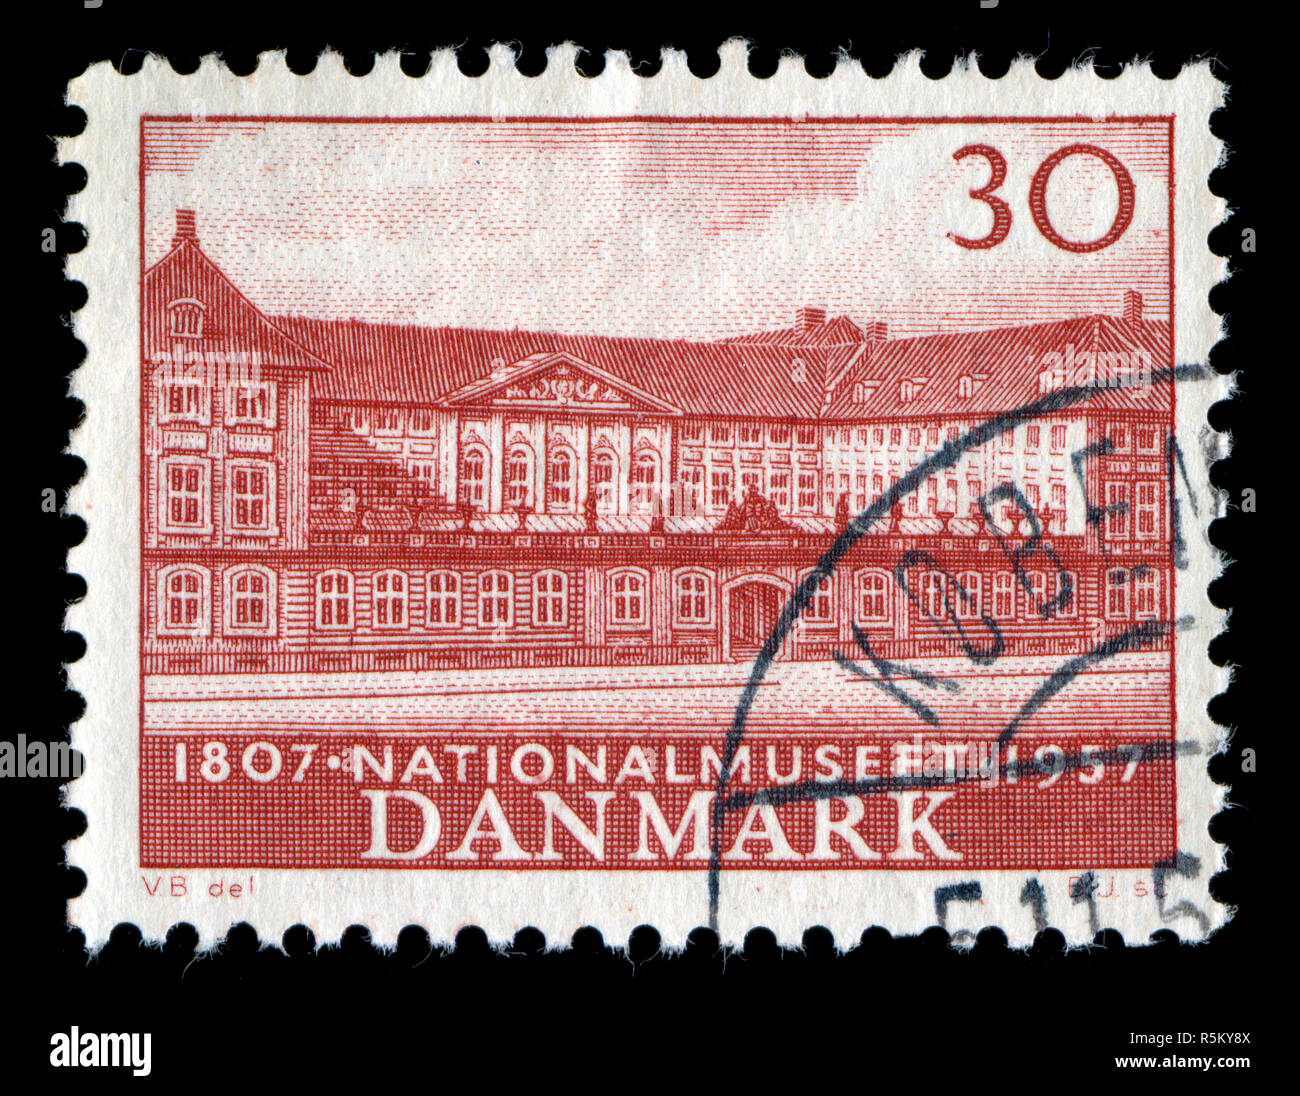 Timbre-poste du Danemark dans le Musée National série émise en 1957 Banque D'Images